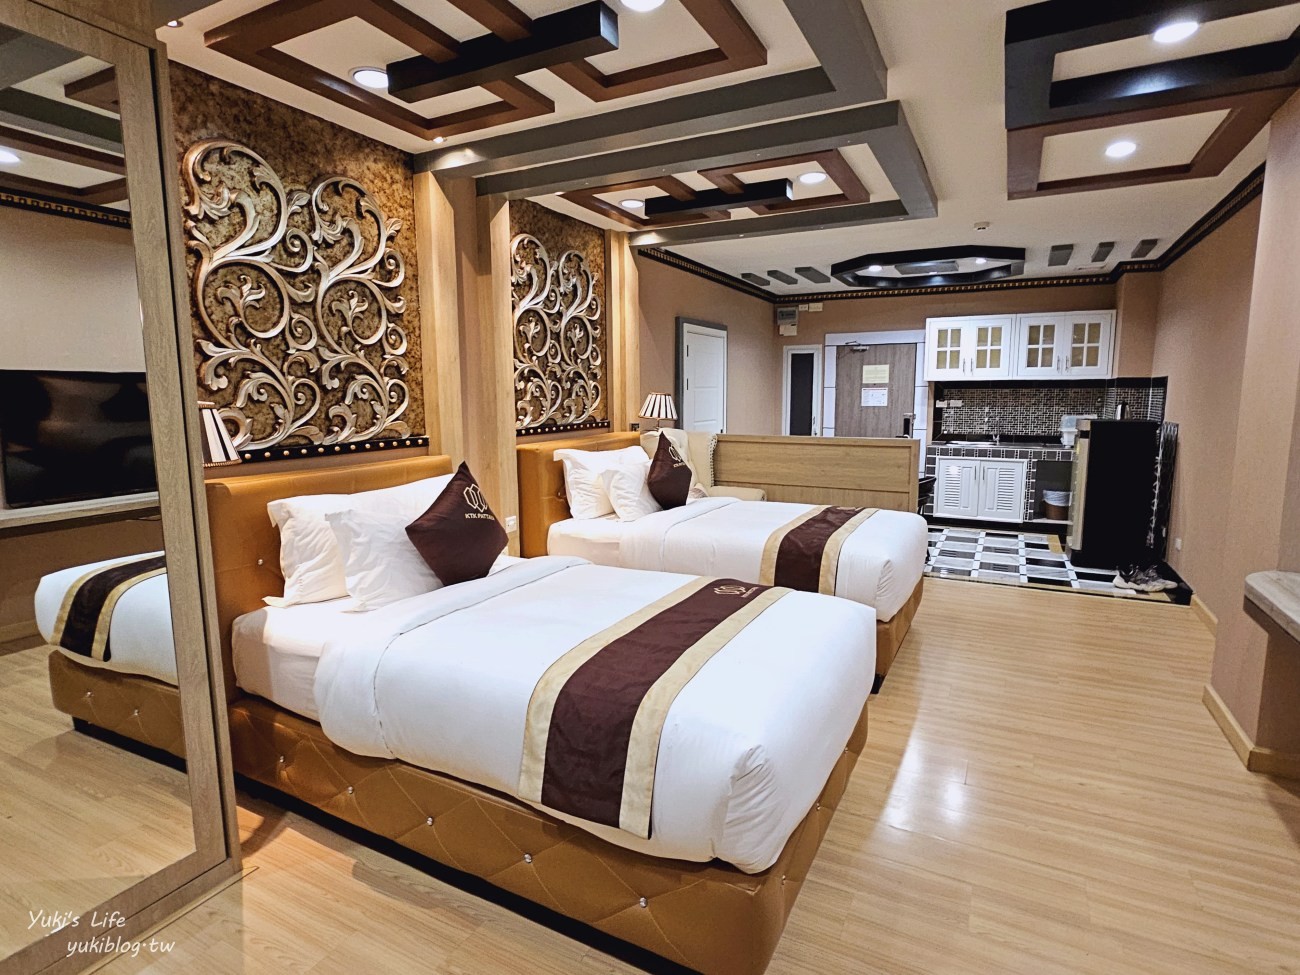 泰國❘芭達雅平價住宿❘芭達雅KTK公寓式飯店~高CP值還有小廚房 (KTK Pattaya Hotel & Residence) - yukiblog.tw